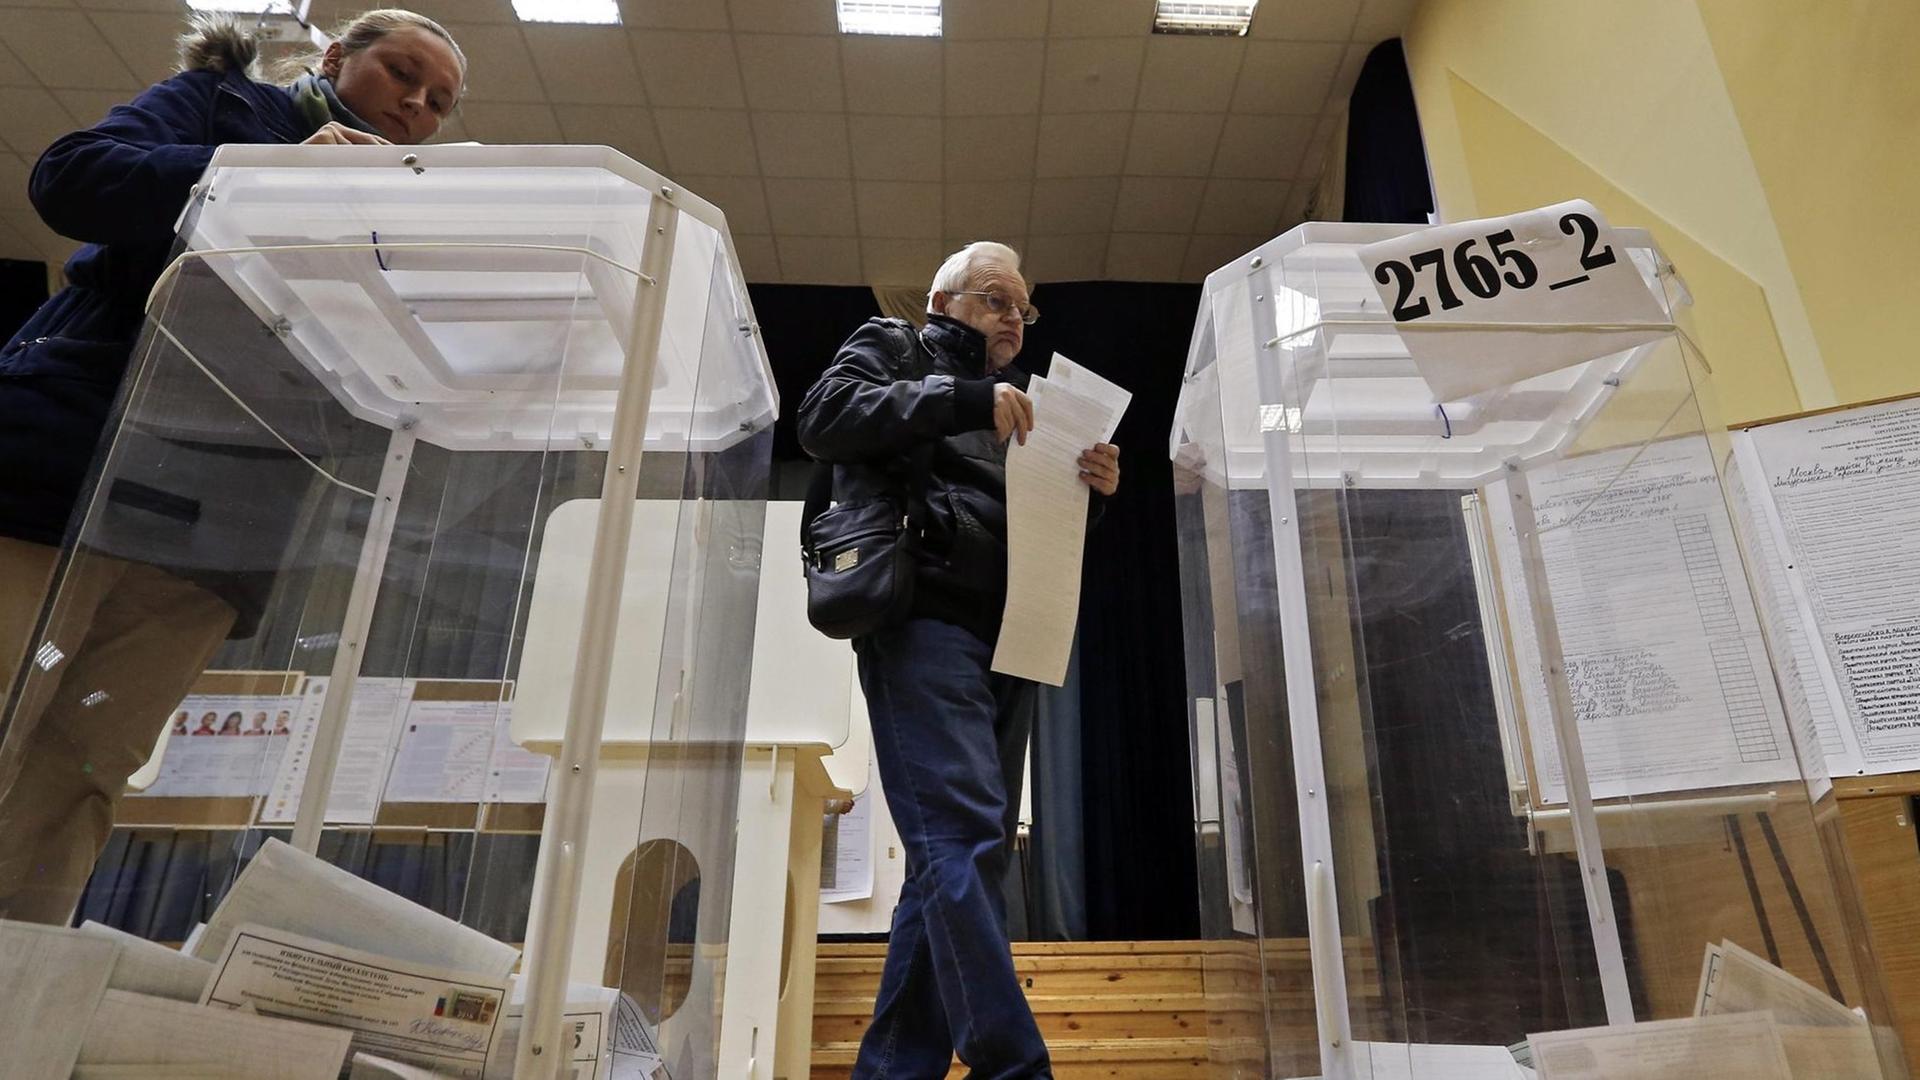 Zwei durchsichtige Wahlurnen stehen auf dem Boden. Dazwischen ein Mann, der seinen Wahlzettel einwirft.